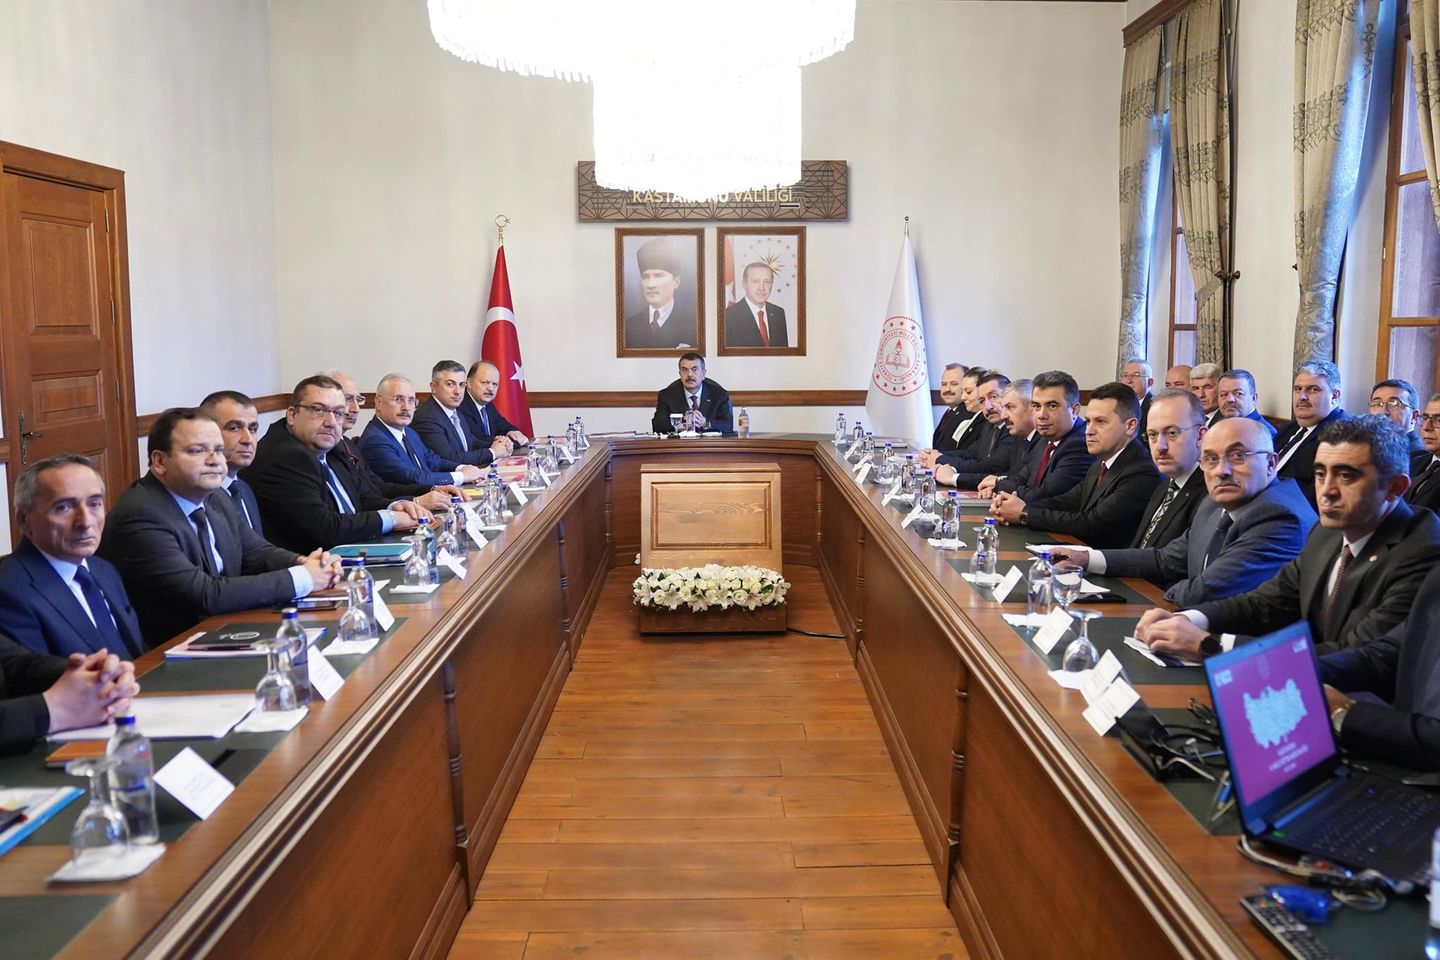 Millî Eğitim Bakanı Yusuf Tekin, Kastamonu'da eğitim faaliyetlerini inceledi ve eğitimde katılımcı bir yaklaşımın önemini vurguladı.